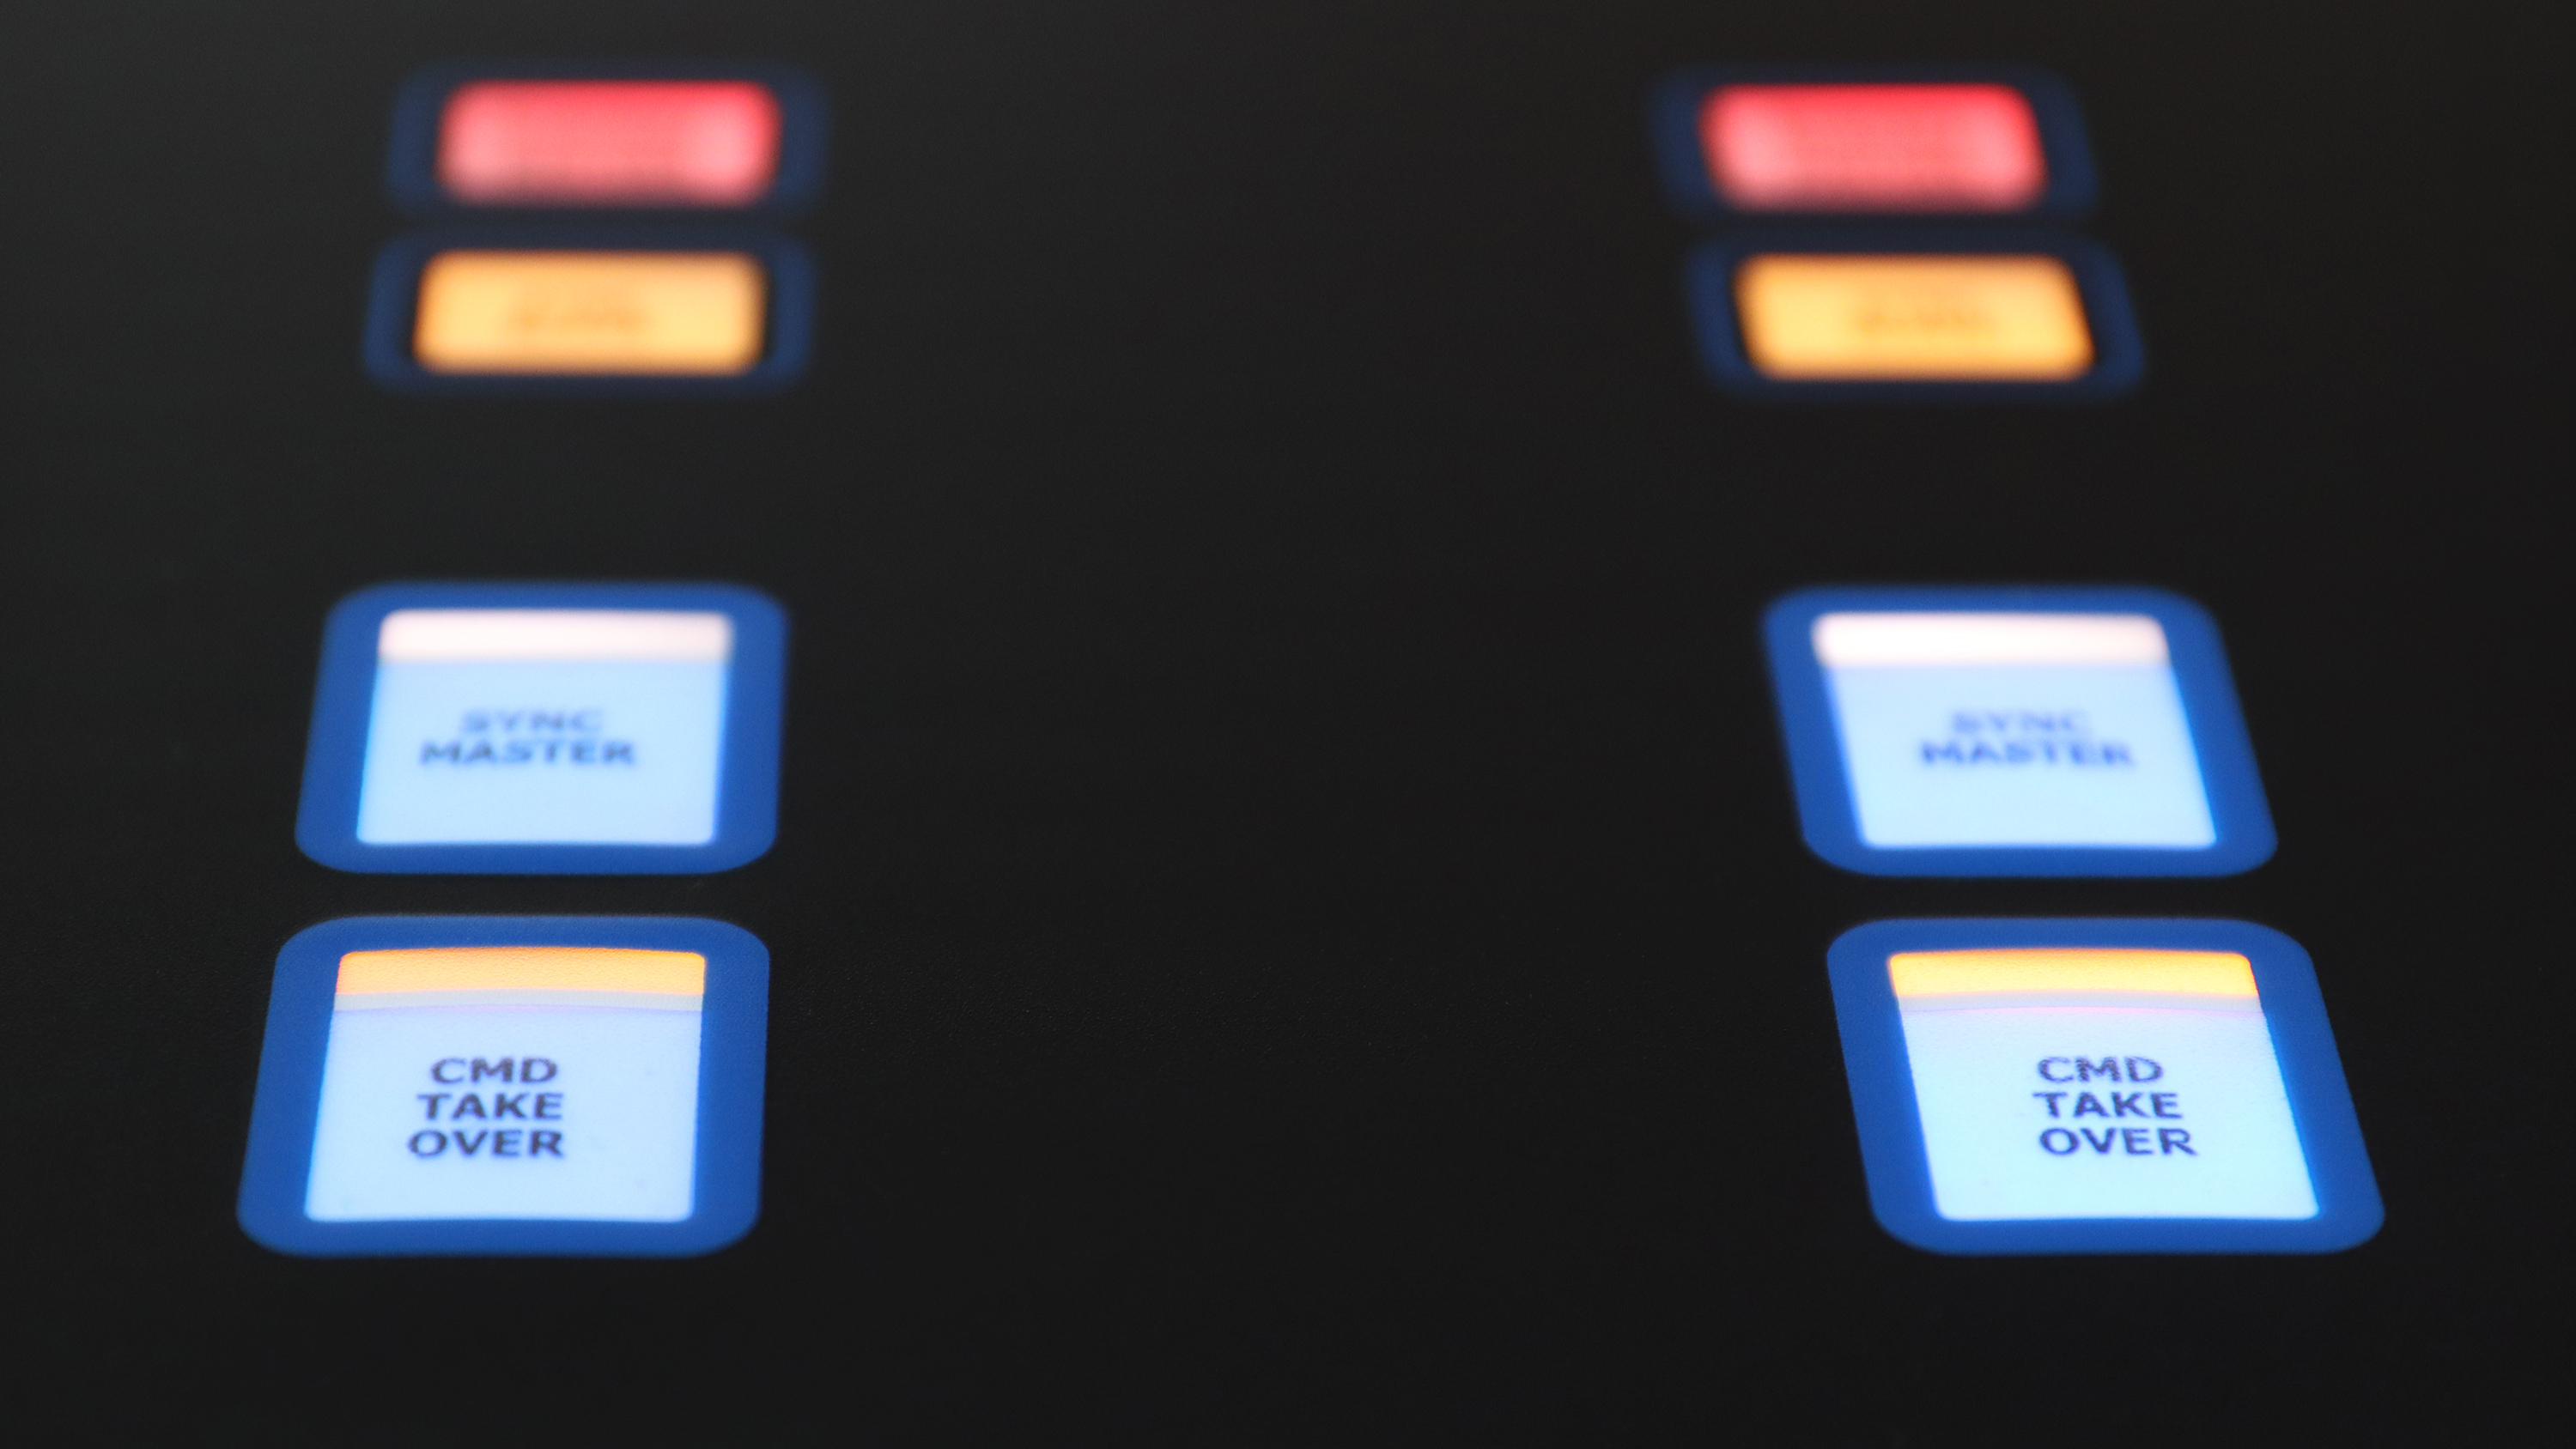 Das Bild zeigt einen Ausschnitt eines Fahrhebelpaneels mit vier beleuchteten Tastern und 4 beleuchteten Leuchtfeldern